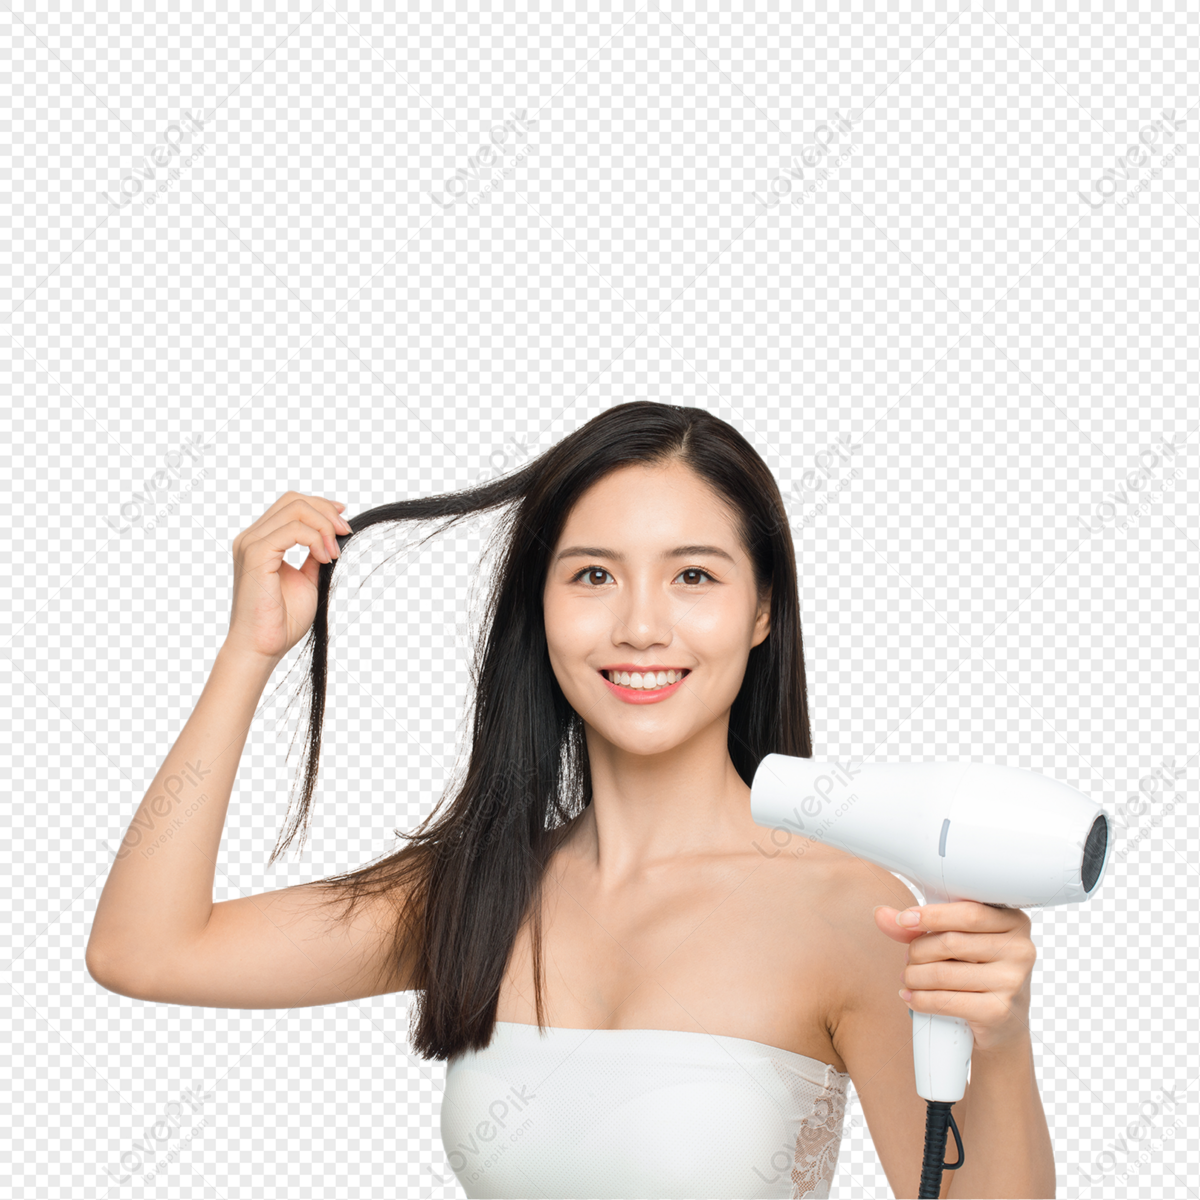 mulher jovem e bonita usando secador de cabelo no salão de